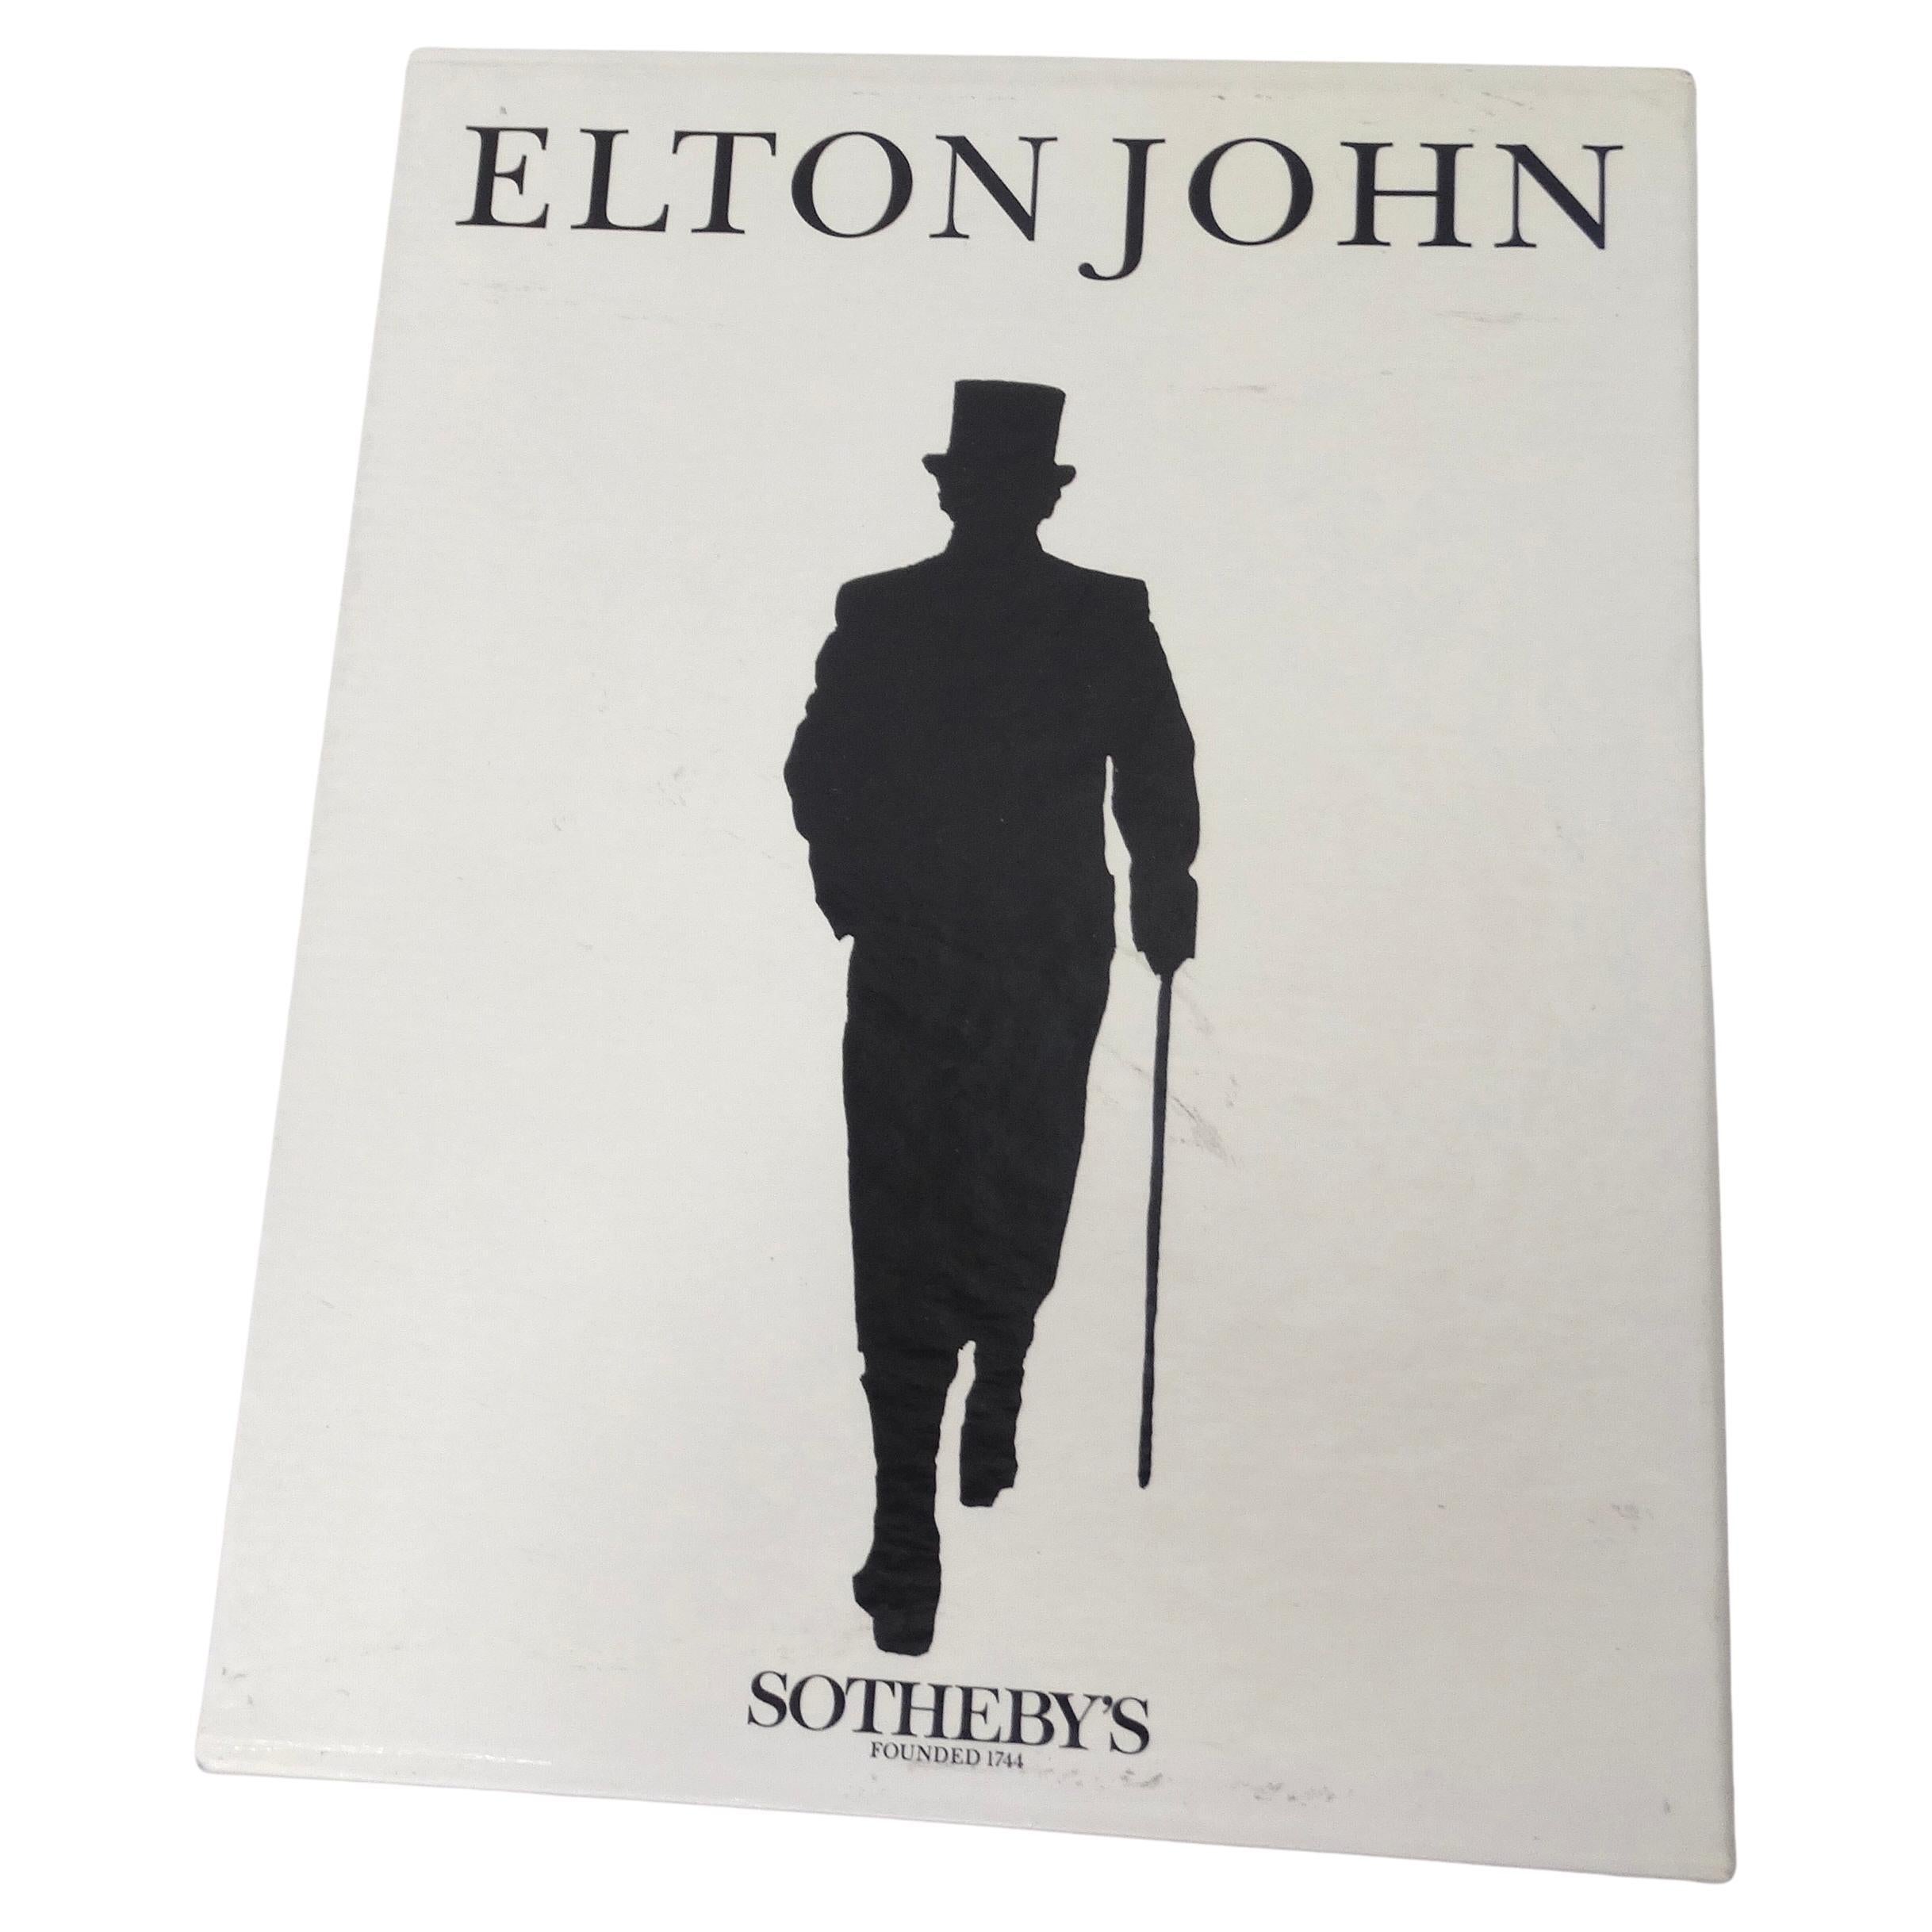 Mode und Musik kollidieren in dieser seltenen 1988 Sotheby's Elton John's Buchsammlung! Tauchen Sie ein in die Modegeschichte der Rocklegende Elton John mit dieser erstaunlichen Sammlung von Büchern, die detailliert auf die Kostüme, den Schmuck, die